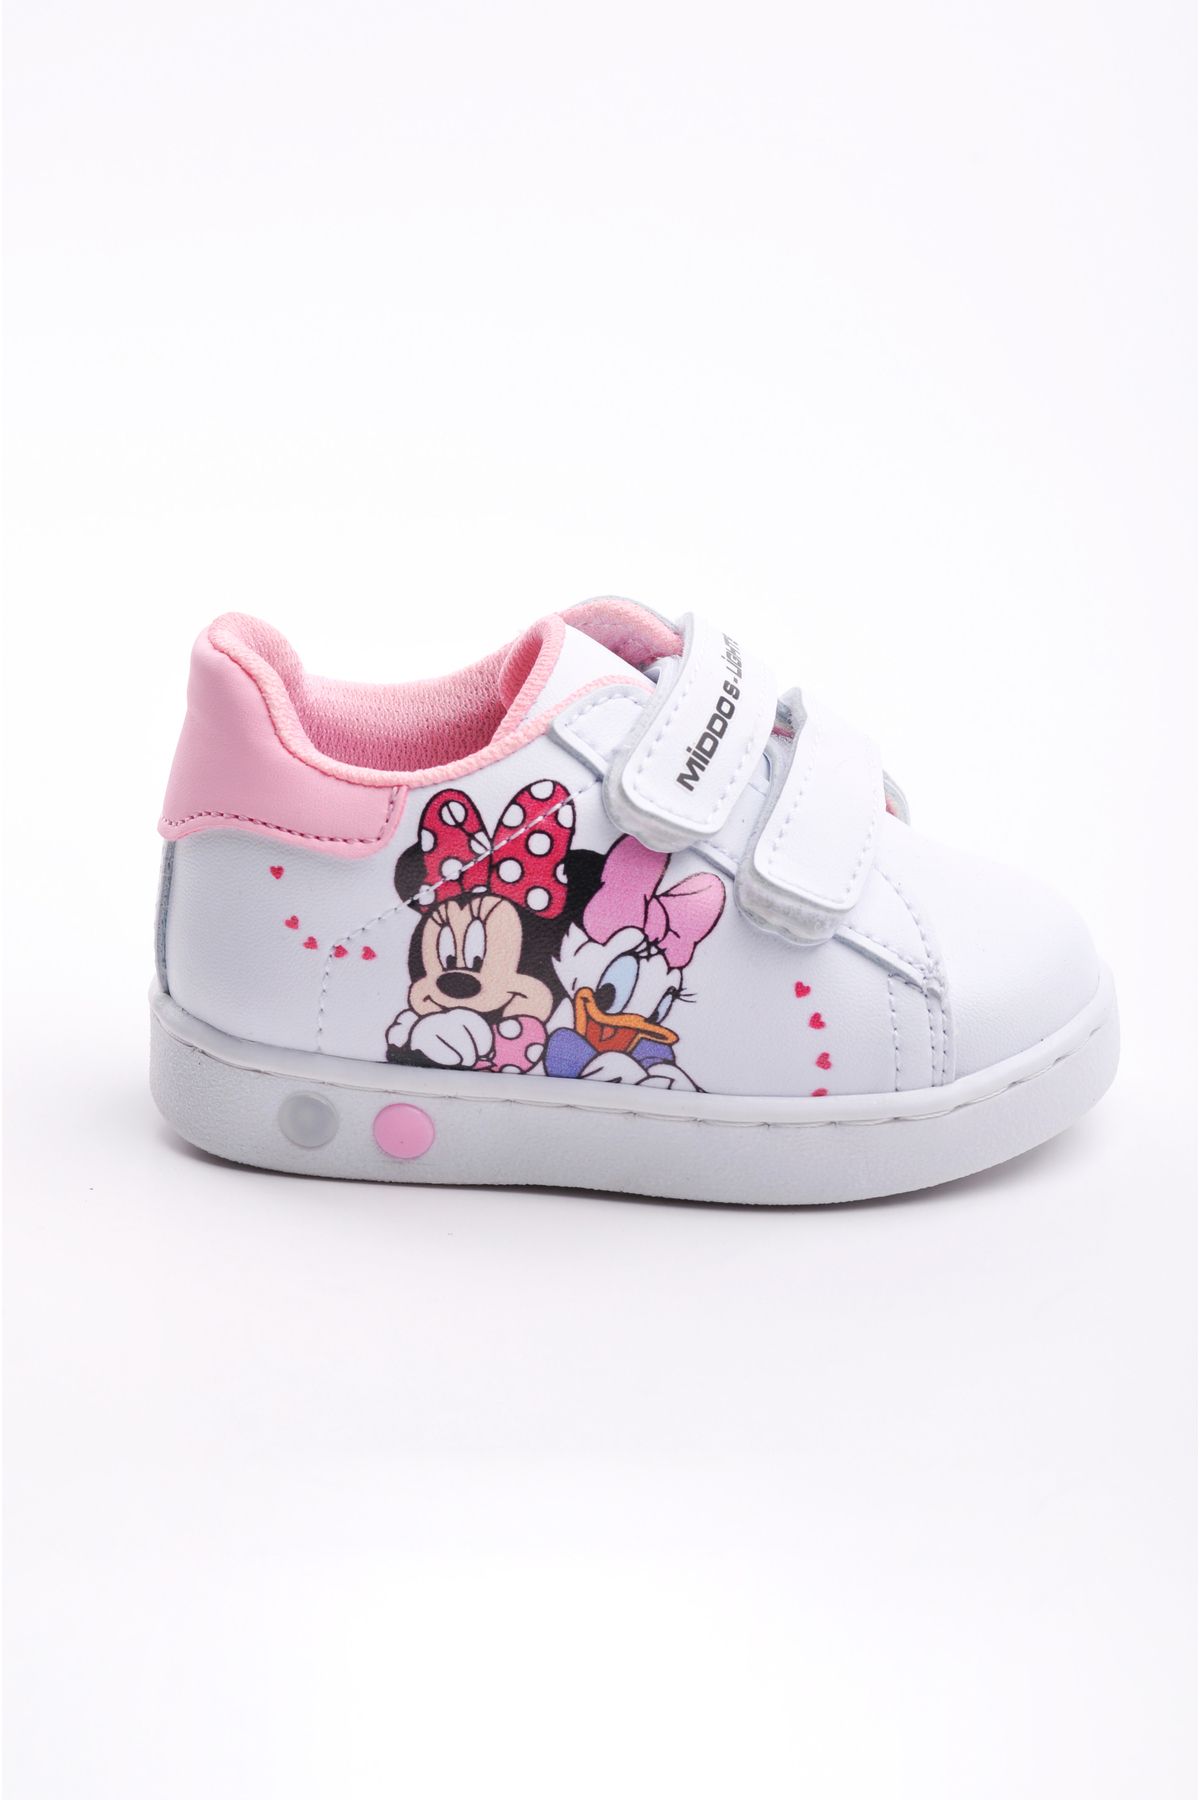 Süperland Ilk Adım Ayakkabısı Kız Bebek Ilk Adım Ayakkabısı Ortopedik Ilk Adım Ayakkabısı Işıklı Mickey Mouse